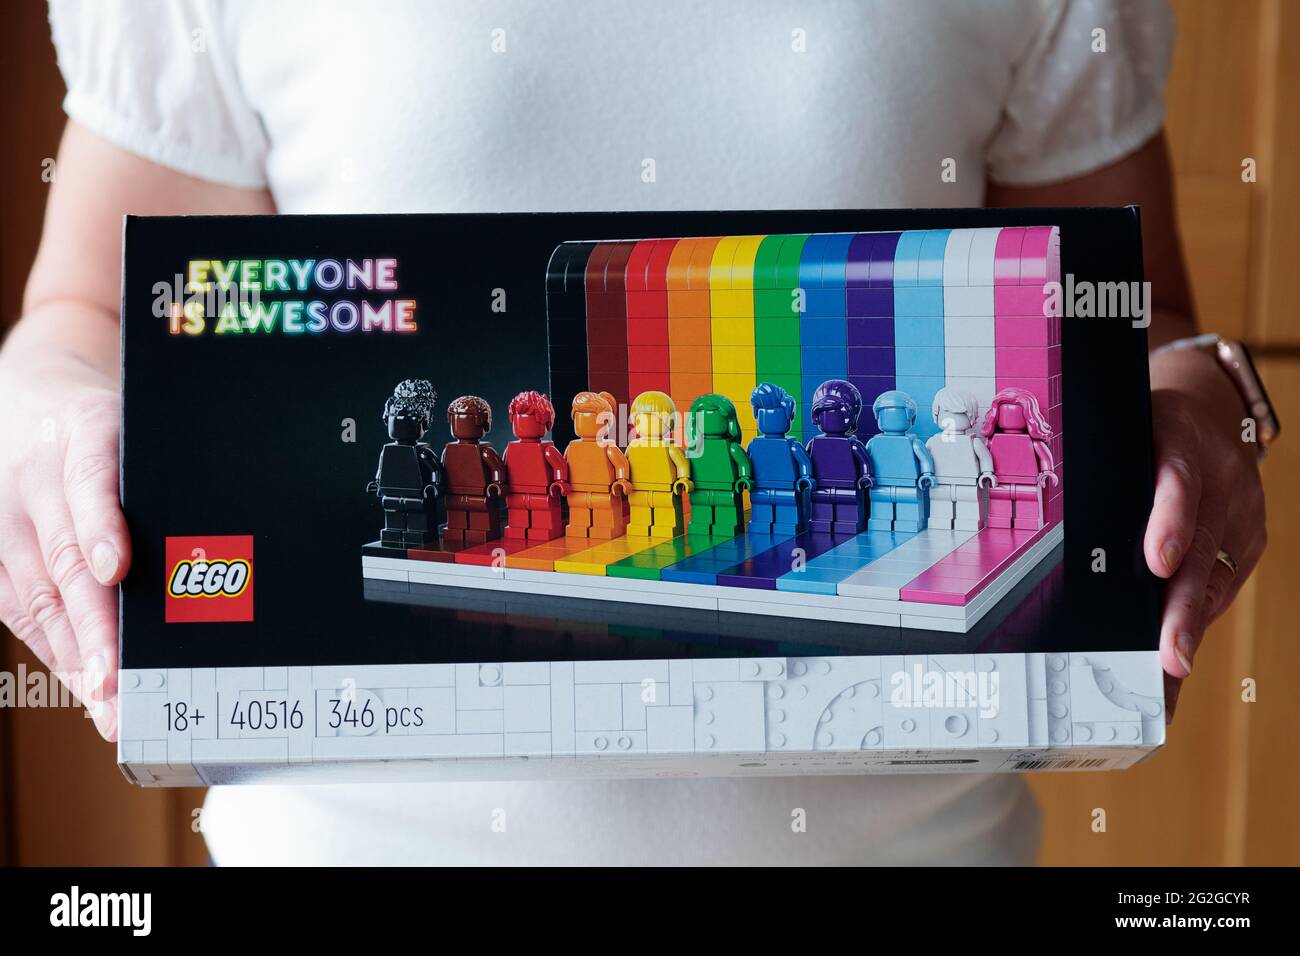 Il tutto è impressionante impostato da Lego. Un nuovo set colorato che celebra la diversità, la positività e la gentilezza con undici figure e un muro di mattoni colorati Foto Stock